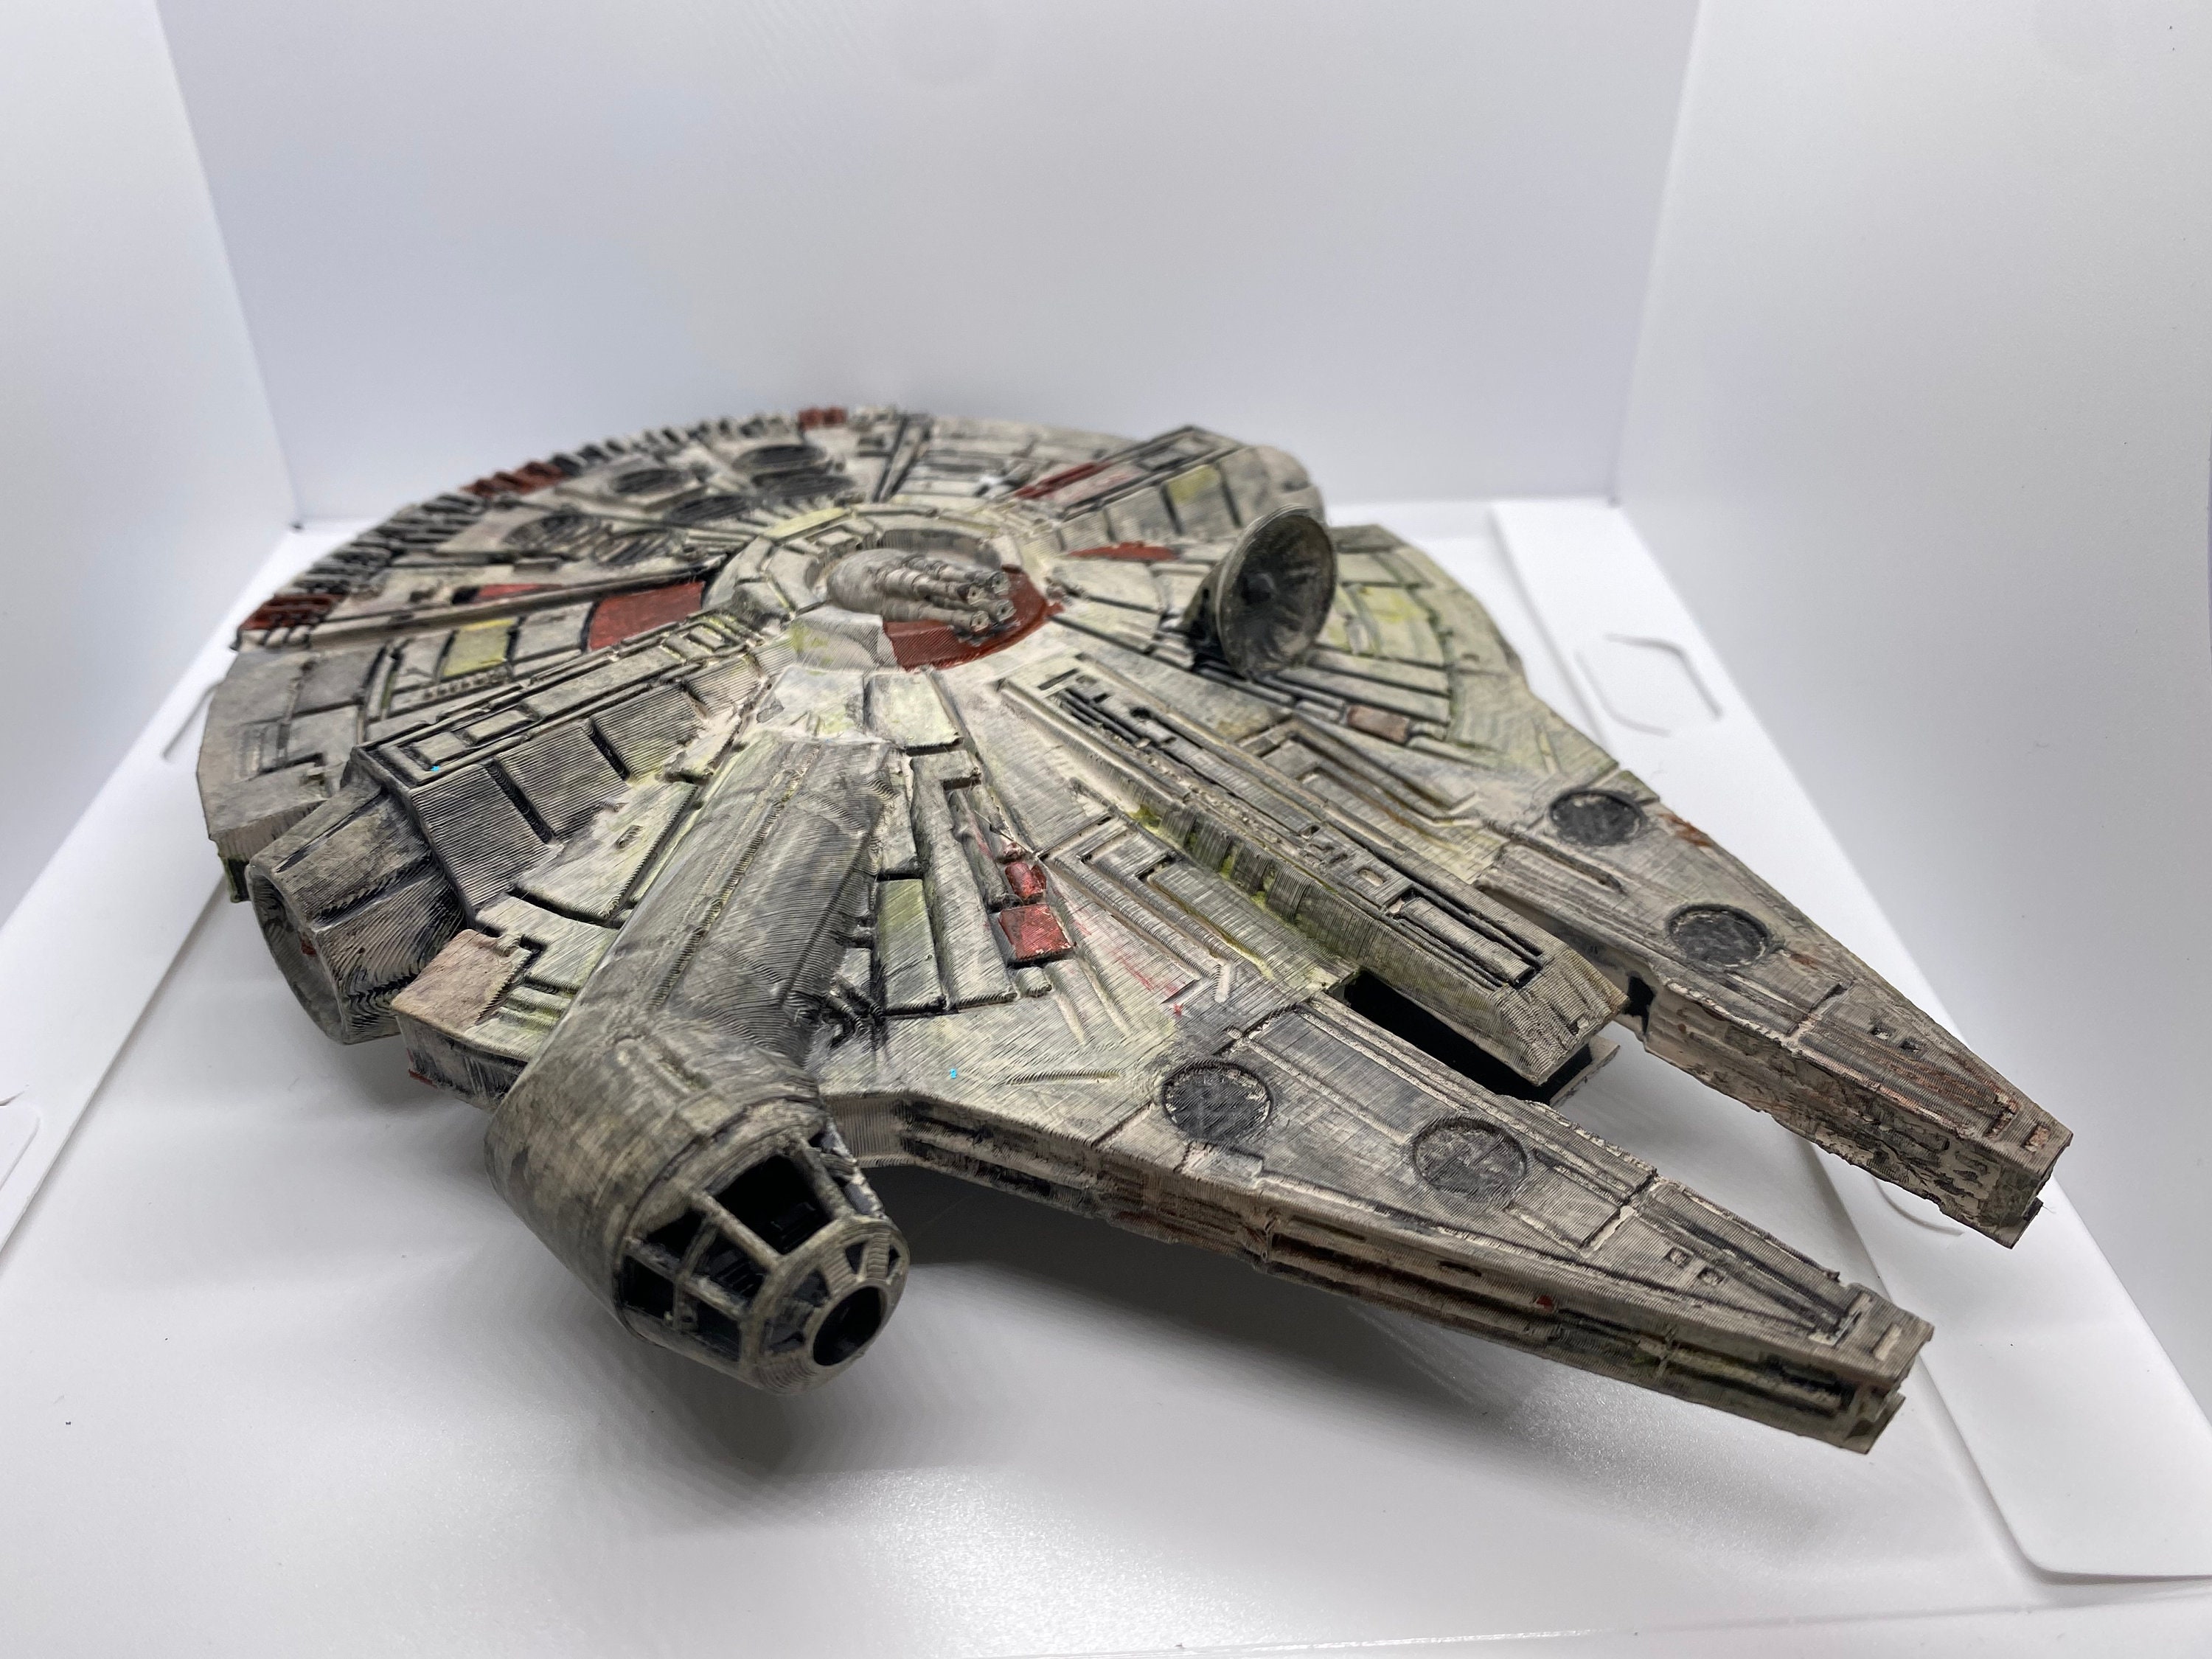 Maqueta madera Halcón Milenario Star Wars por 22,90€ –